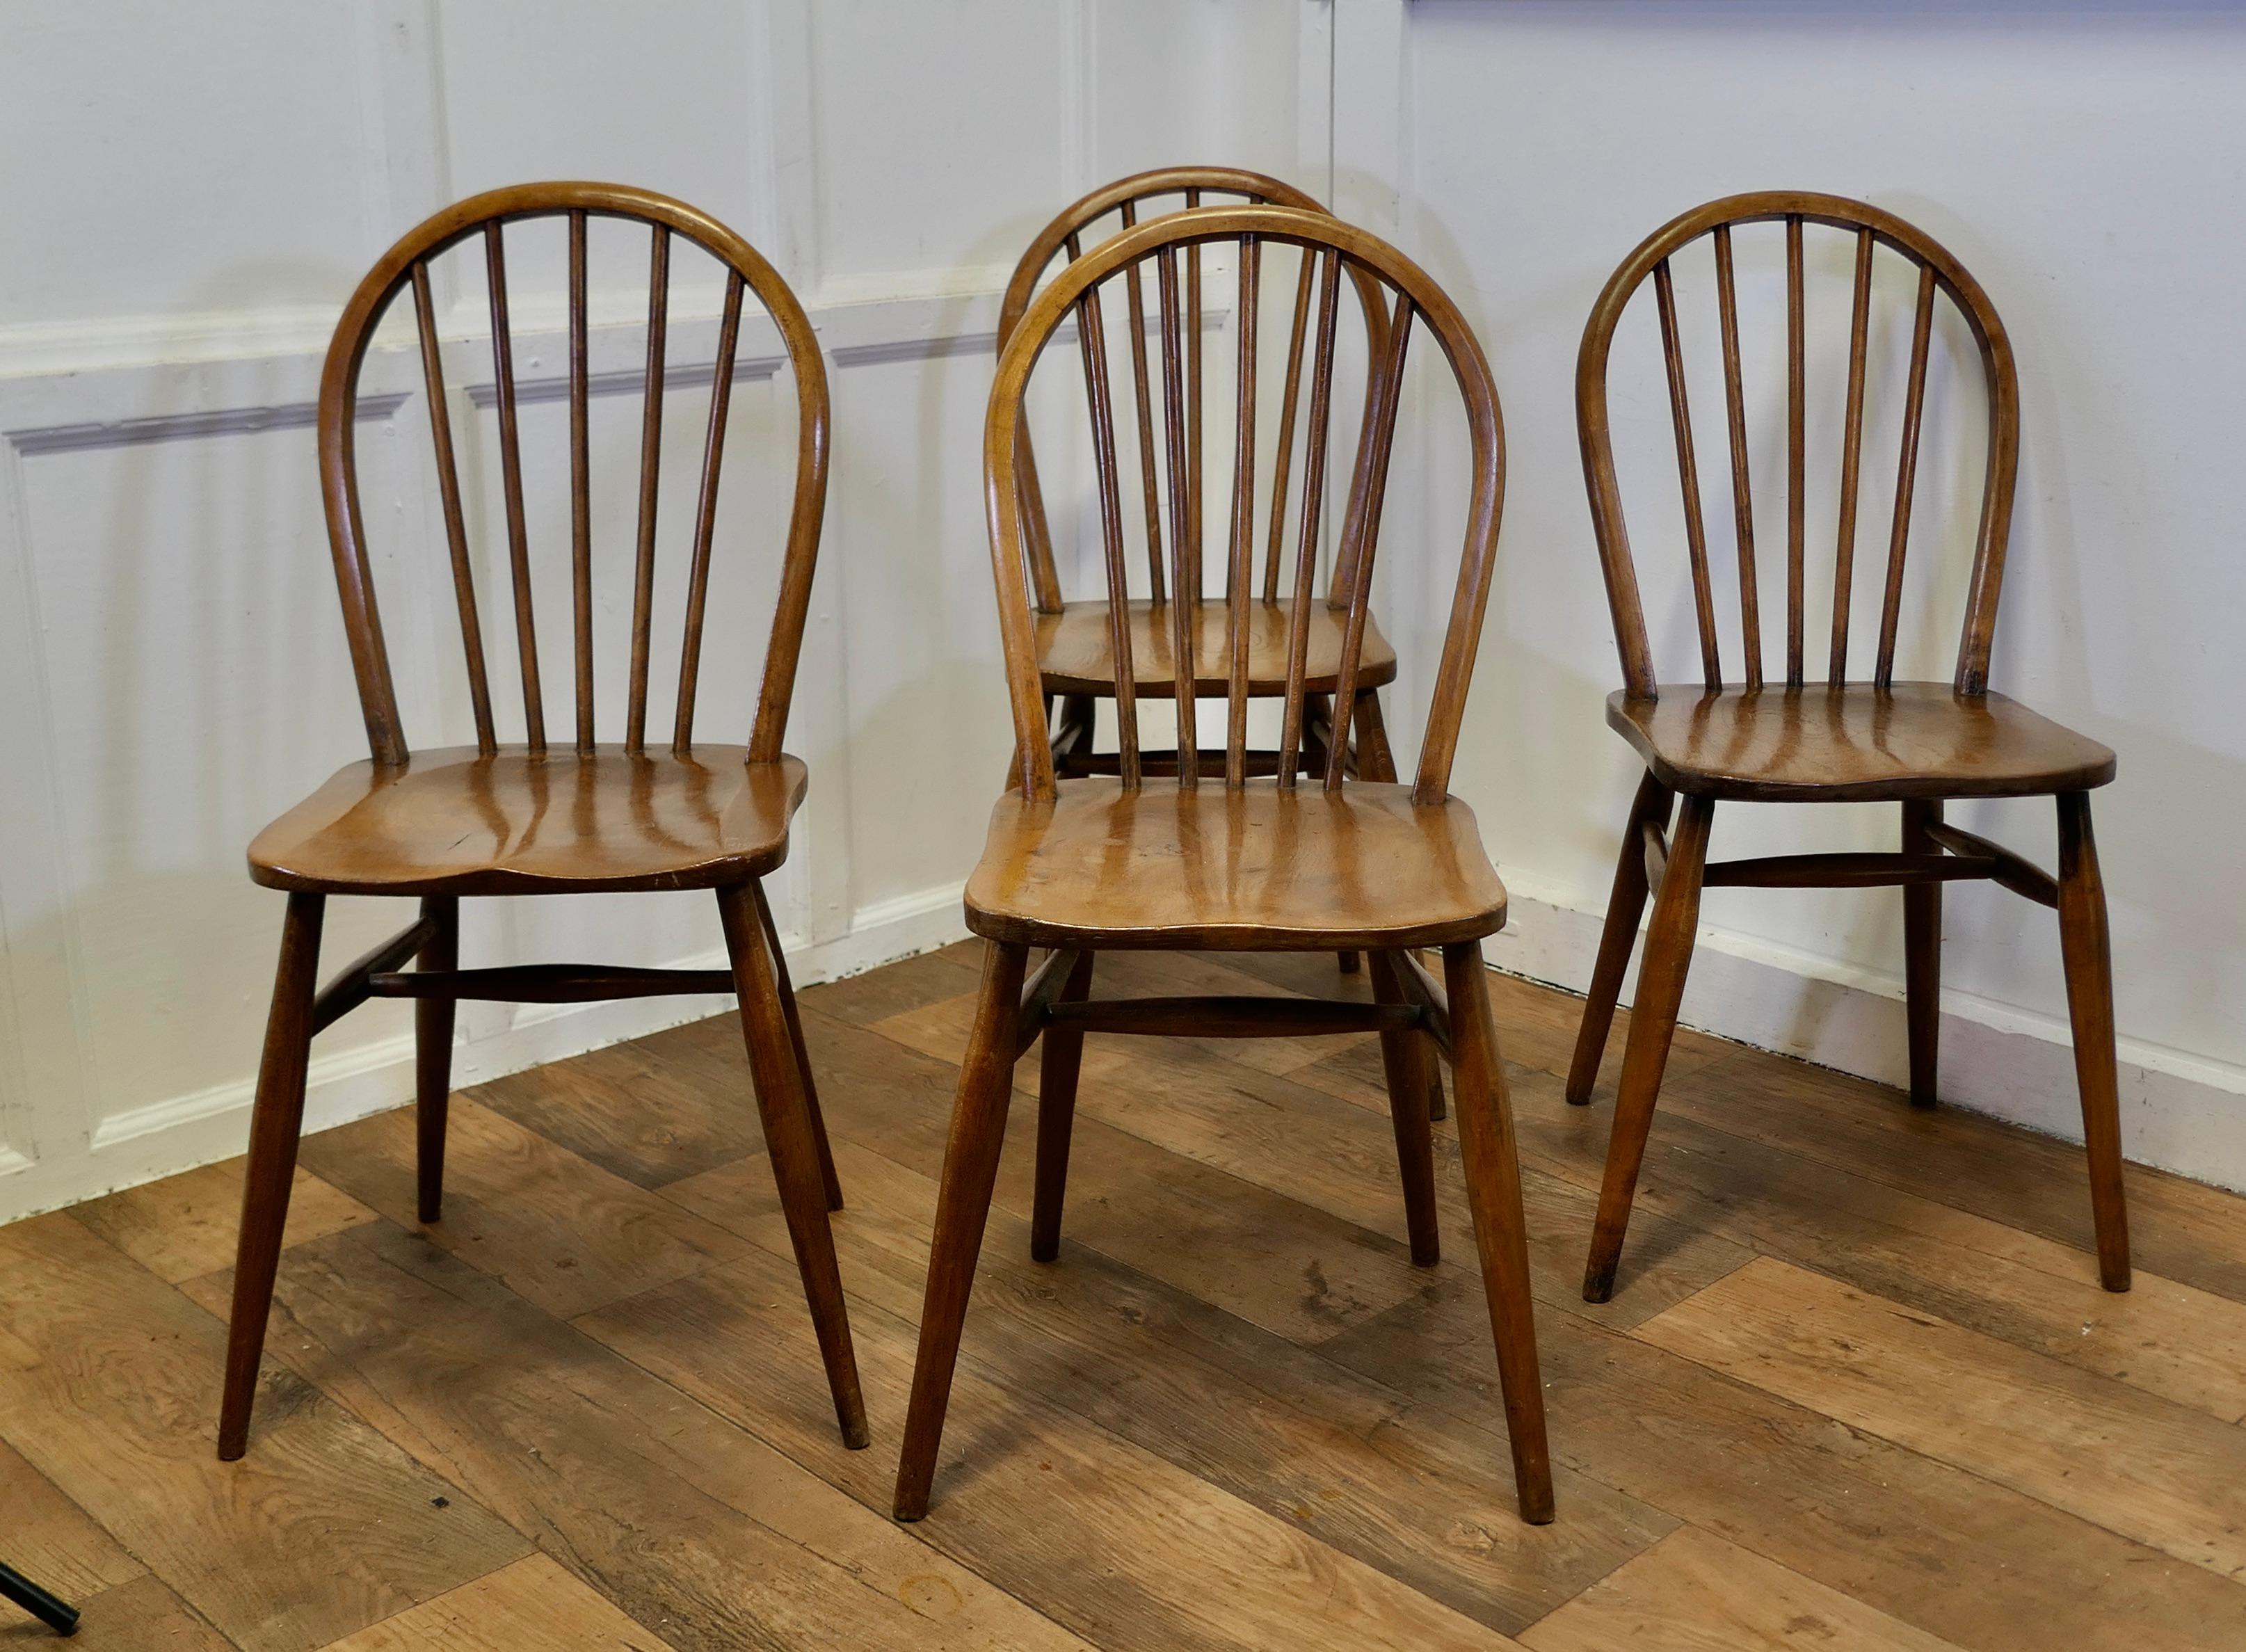 Ensemble de 4 chaises de salle à manger Windsor en hêtre et orme dorés 

Les chaises sont d'une superbe qualité, elles sont fabriquées de manière artisanale et sont très spacieuses et confortables. Les chaises sont en orme massif avec un dossier en